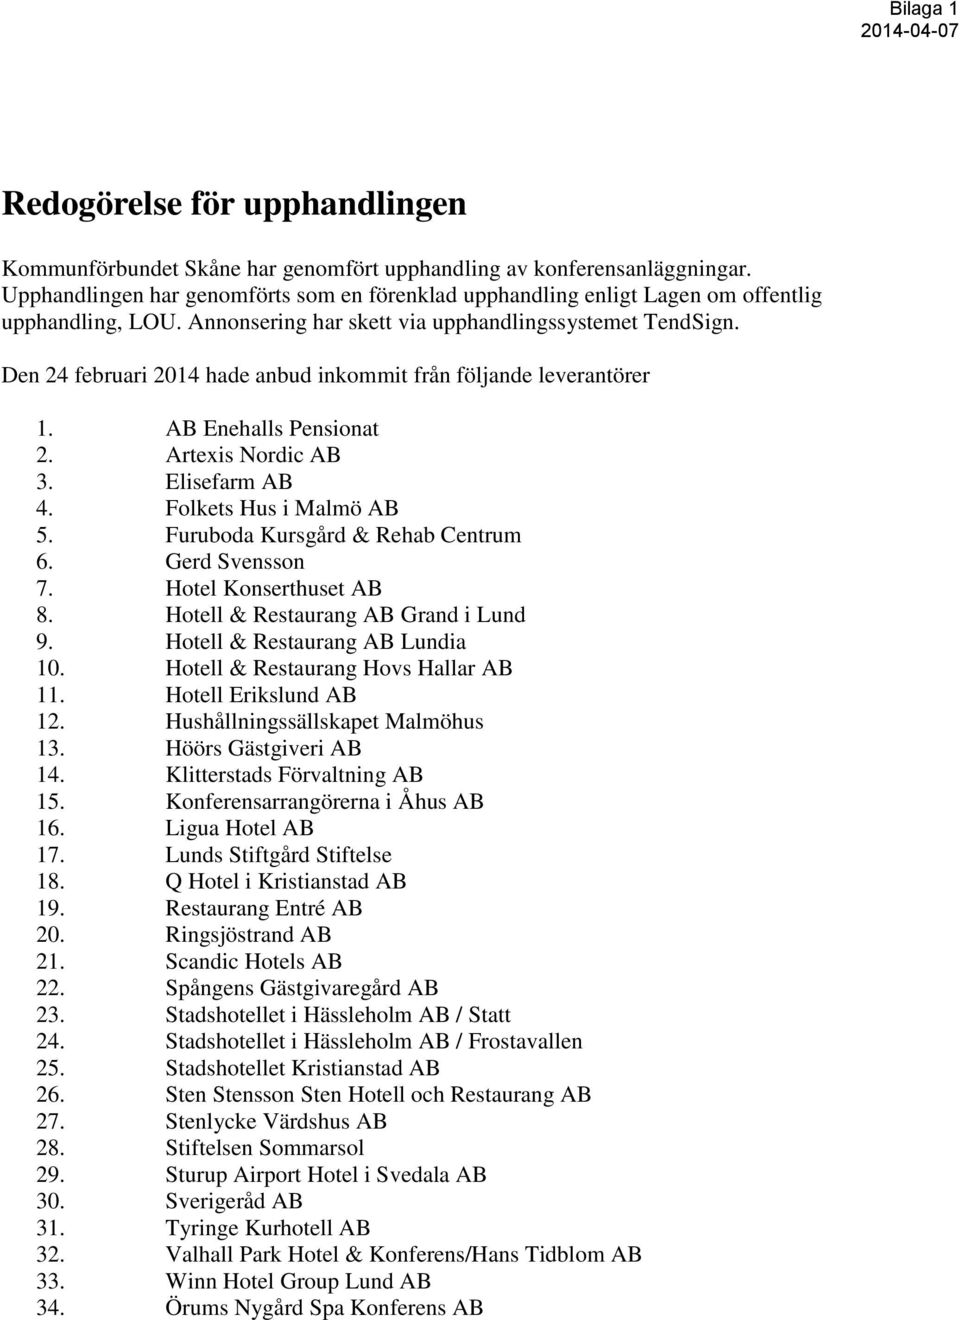 Den 24 februari 2014 hade anbud inkommit från följande leverantörer 1. AB Enehalls Pensionat 2. Artexis Nordic AB 3. Elisefarm AB 4. Folkets Hus i Malmö AB 5. Furuboda Kursgård & Rehab Centrum 6.